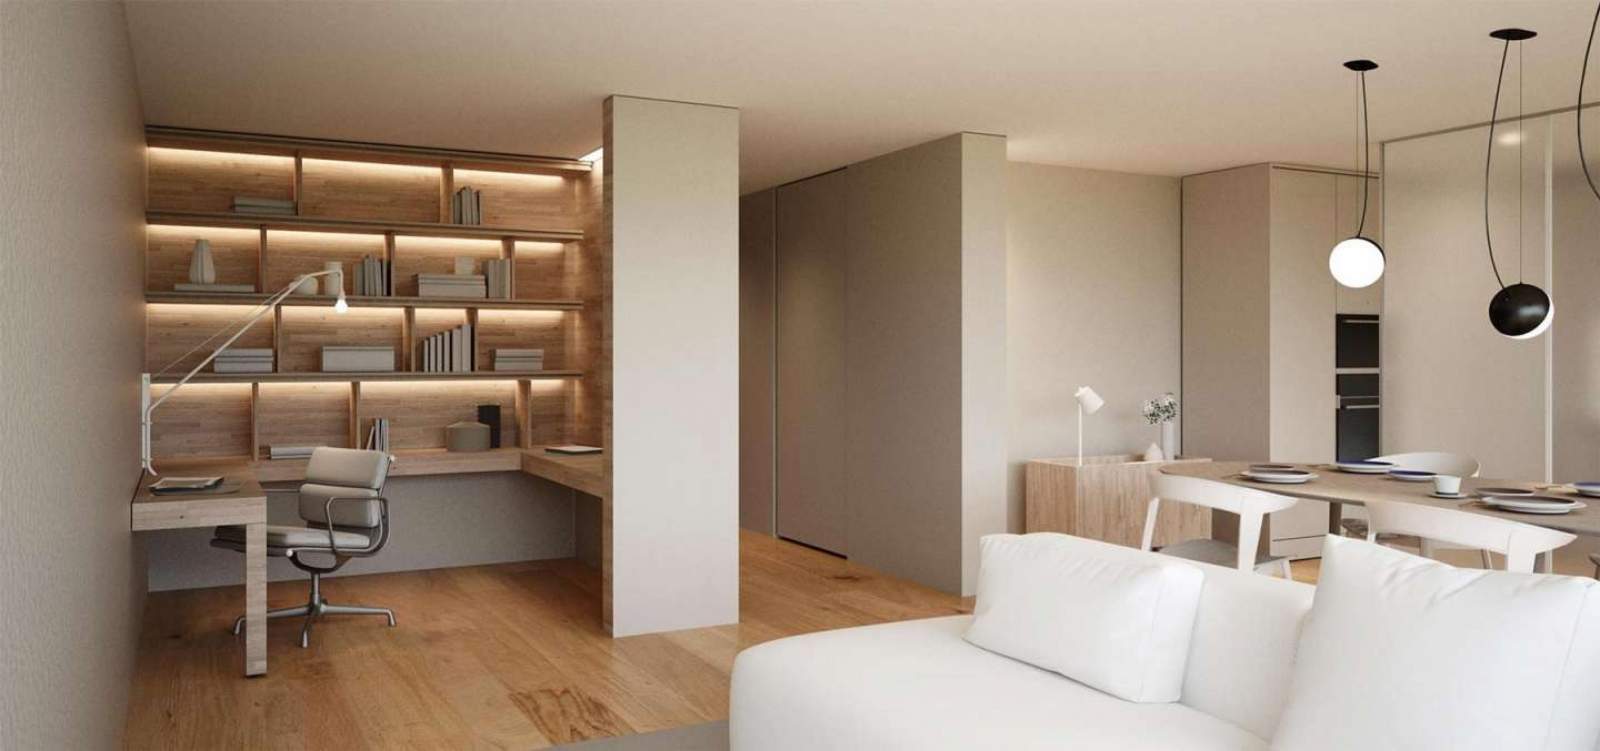 Apartamento novo e moderno, em condomínio exclusivo, Leça da Palmeira_133555